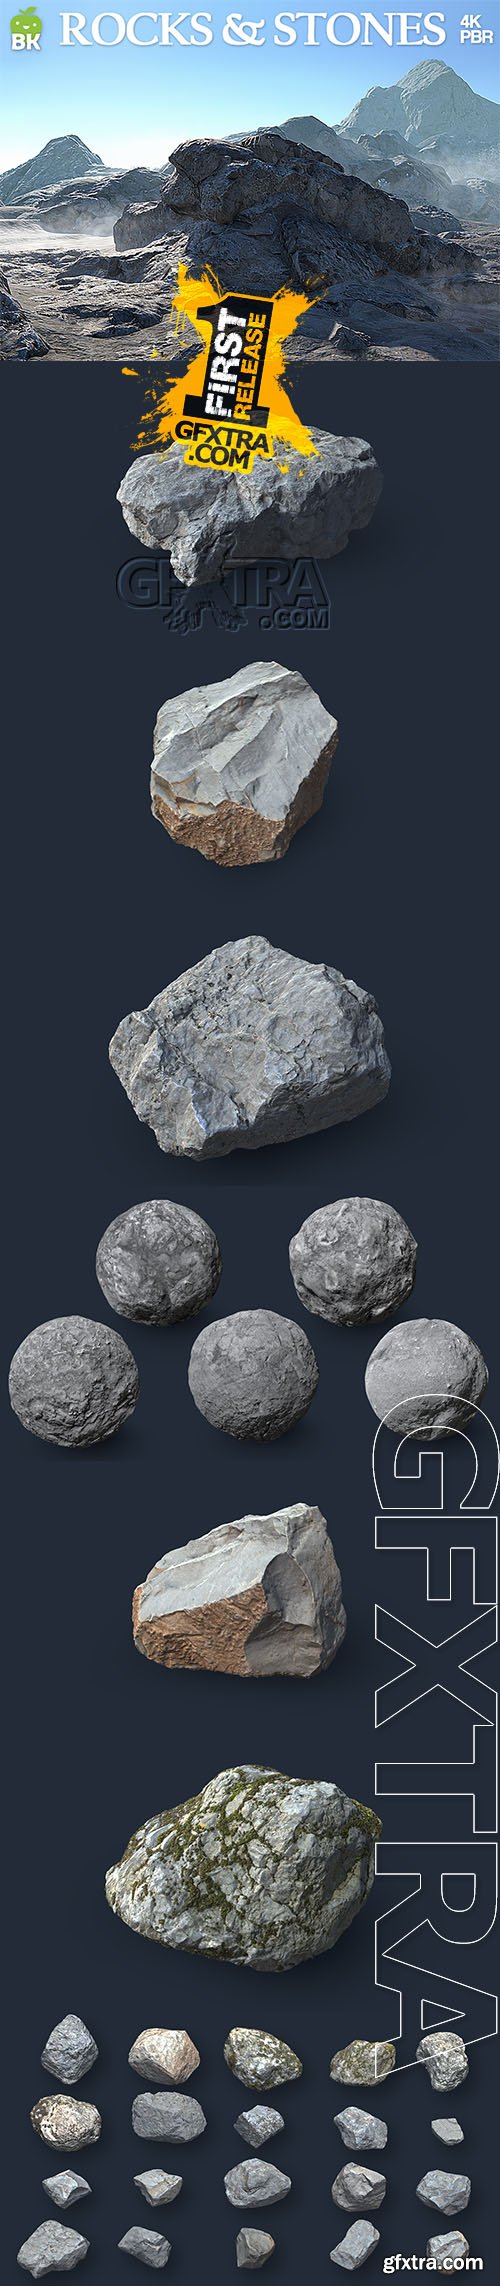 BK - HD Rocks & Stones v2